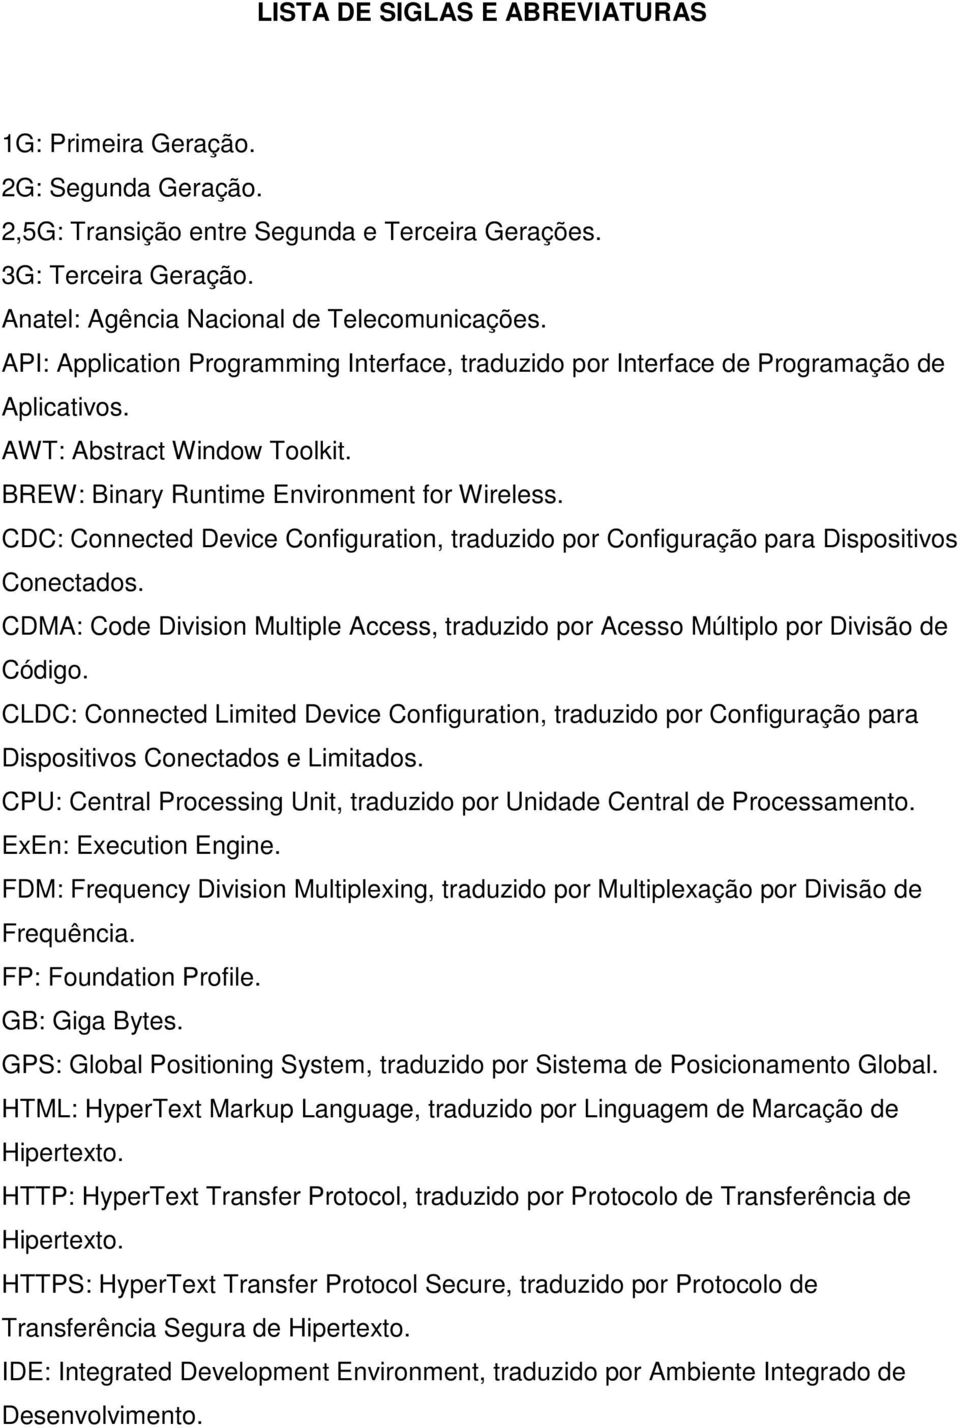 CDC: Connected Device Configuration, traduzido por Configuração para Dispositivos Conectados. CDMA: Code Division Multiple Access, traduzido por Acesso Múltiplo por Divisão de Código.